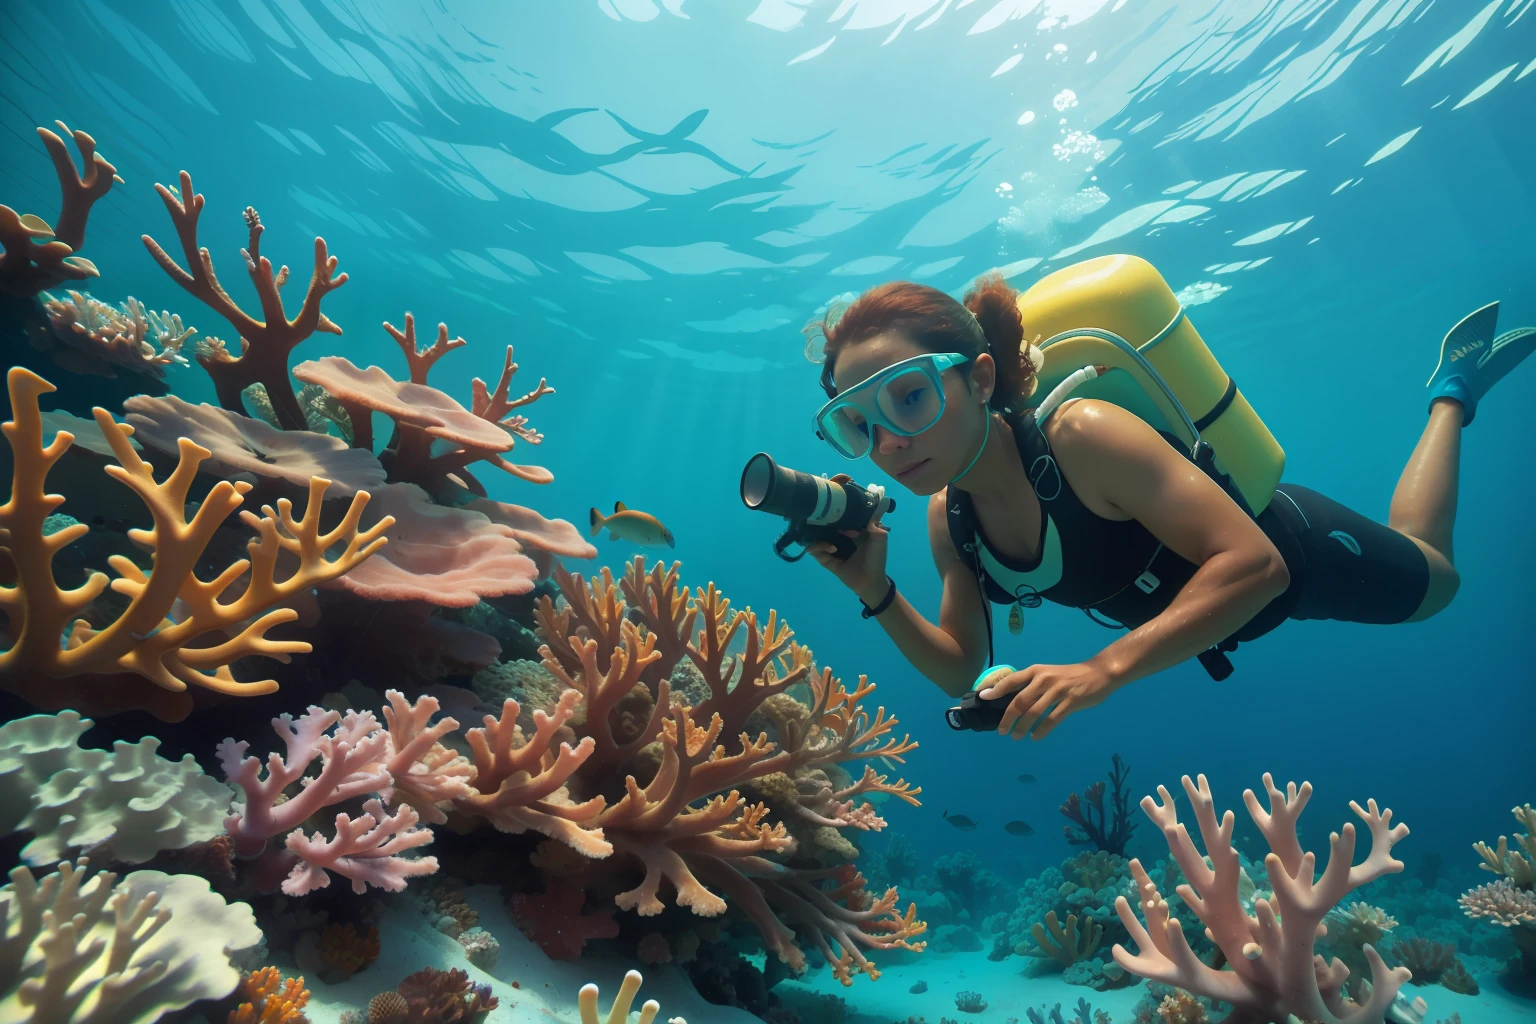 fecha: 2013
País: Bahamas
Descripción: Un biólogo marino adulto de las Bahamas estudia cuidadosamente los vibrantes arrecifes de coral bajo el agua, Agregar un elemento de administración ambiental a la atmósfera.